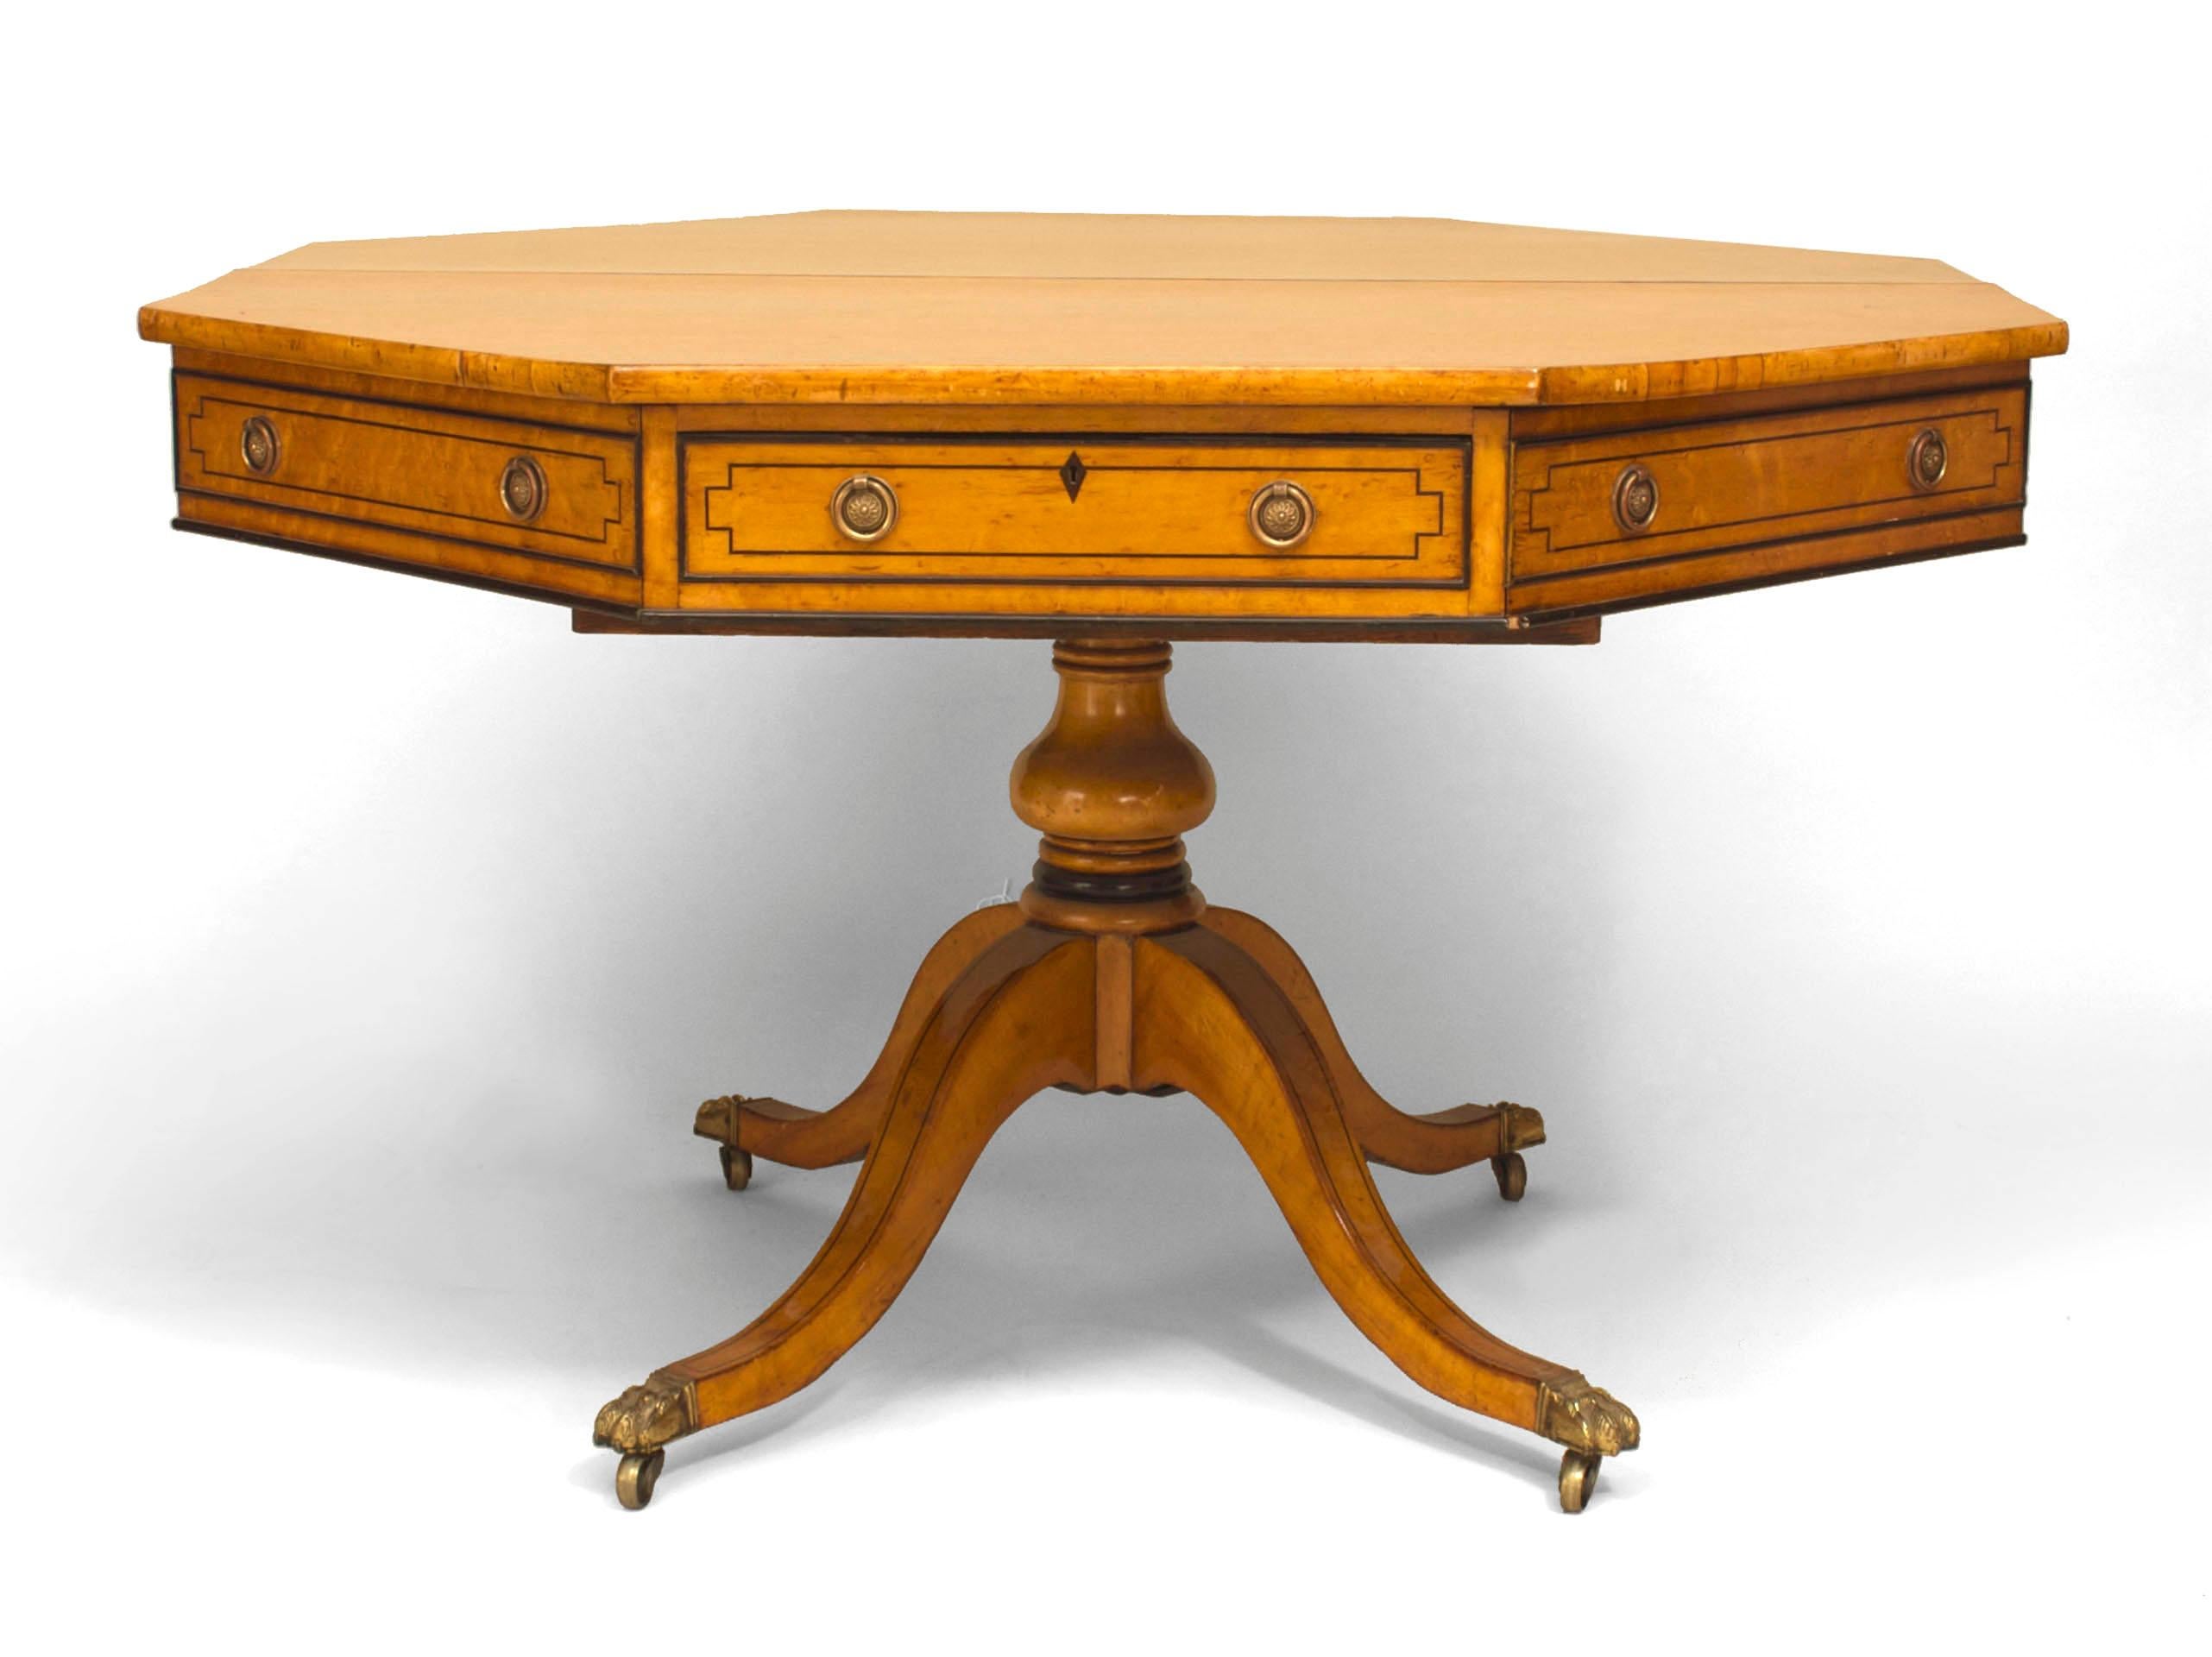 Table centrale octogonale de style Régence anglaise (milieu du 19e siècle) en érable avec deux tiroirs et reposant sur une base à piédestal avec 4 pieds. (estampillé : BLAIN & SON/ LIVERPOOL)
